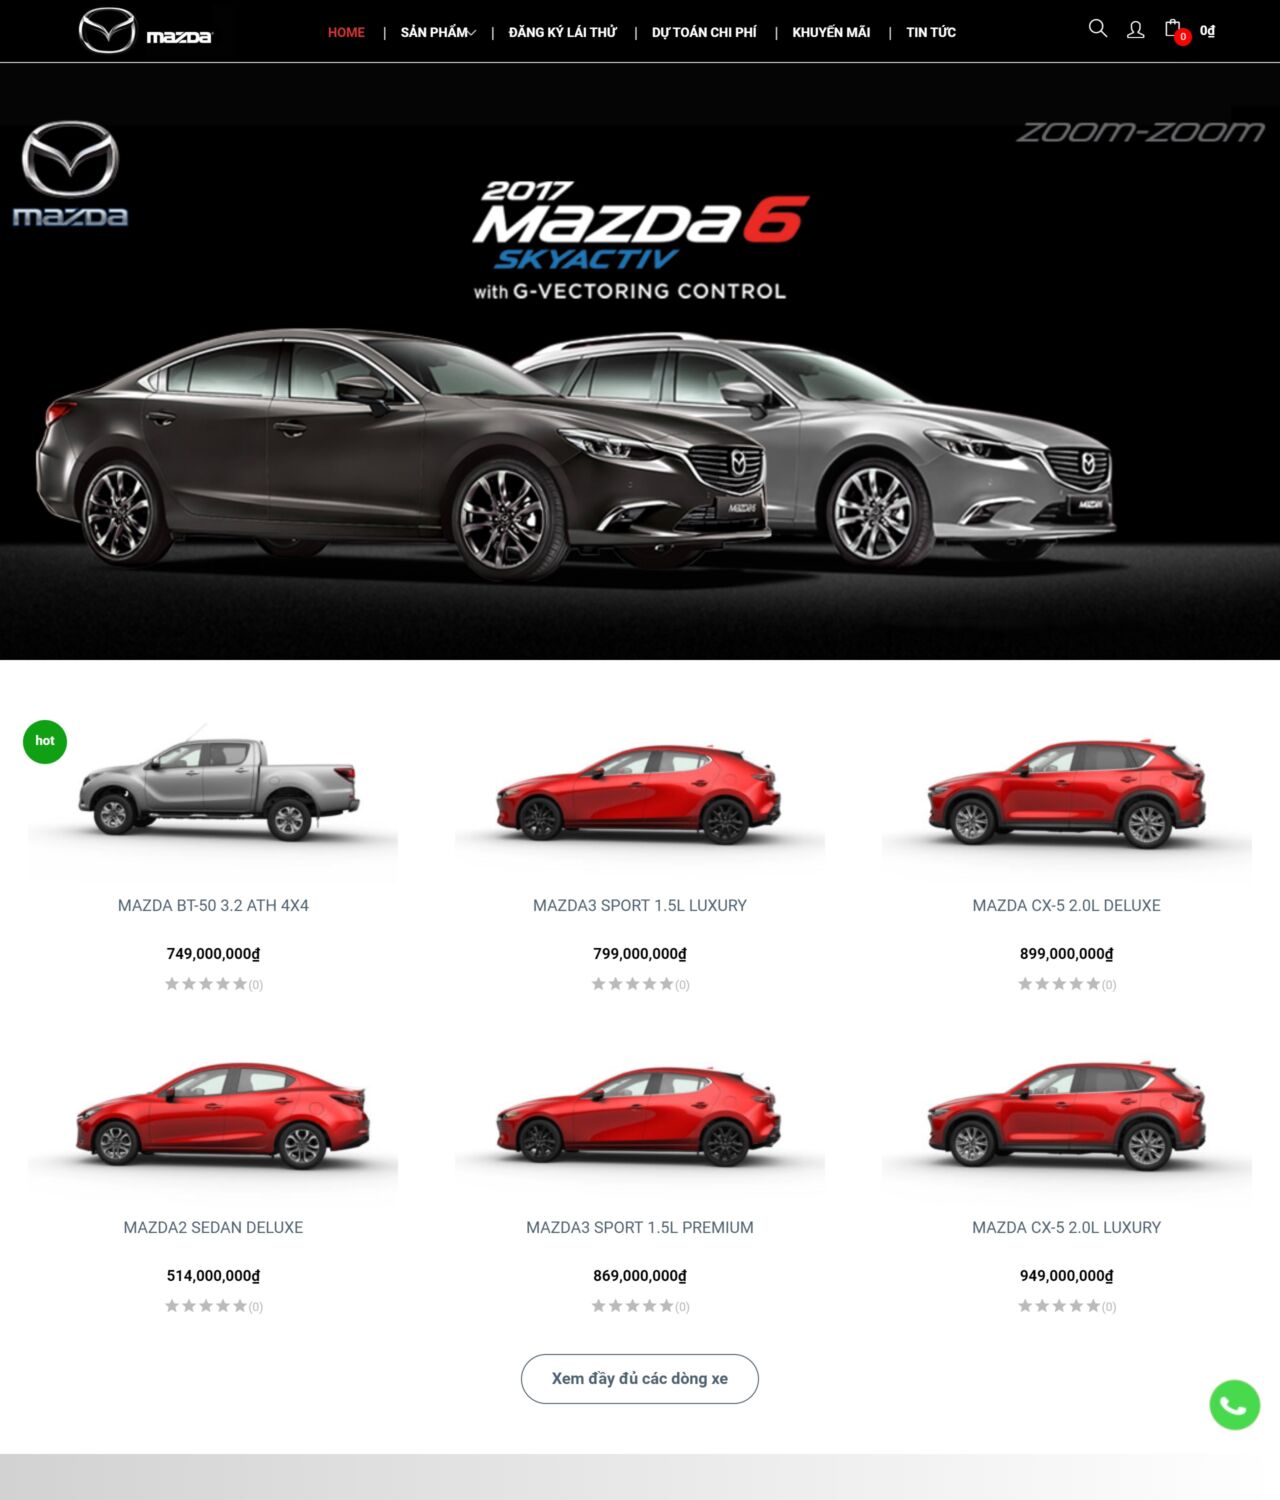 Mazda 2024 được bán tại BH13 Thời Thượng - mẫu website bán ô tô chuyên nghiệp và đẳng cấp. Tại đây, bạn có thể dễ dàng tìm hiểu về các sản phẩm Mazda và tham khảo giá cả cũng như các ưu đãi mới nhất. Hơn nữa, còn được hỗ trợ bởi Free Web App để giúp quá trình mua bán ô tô trở nên dễ dàng và nhanh chóng hơn bao giờ hết.